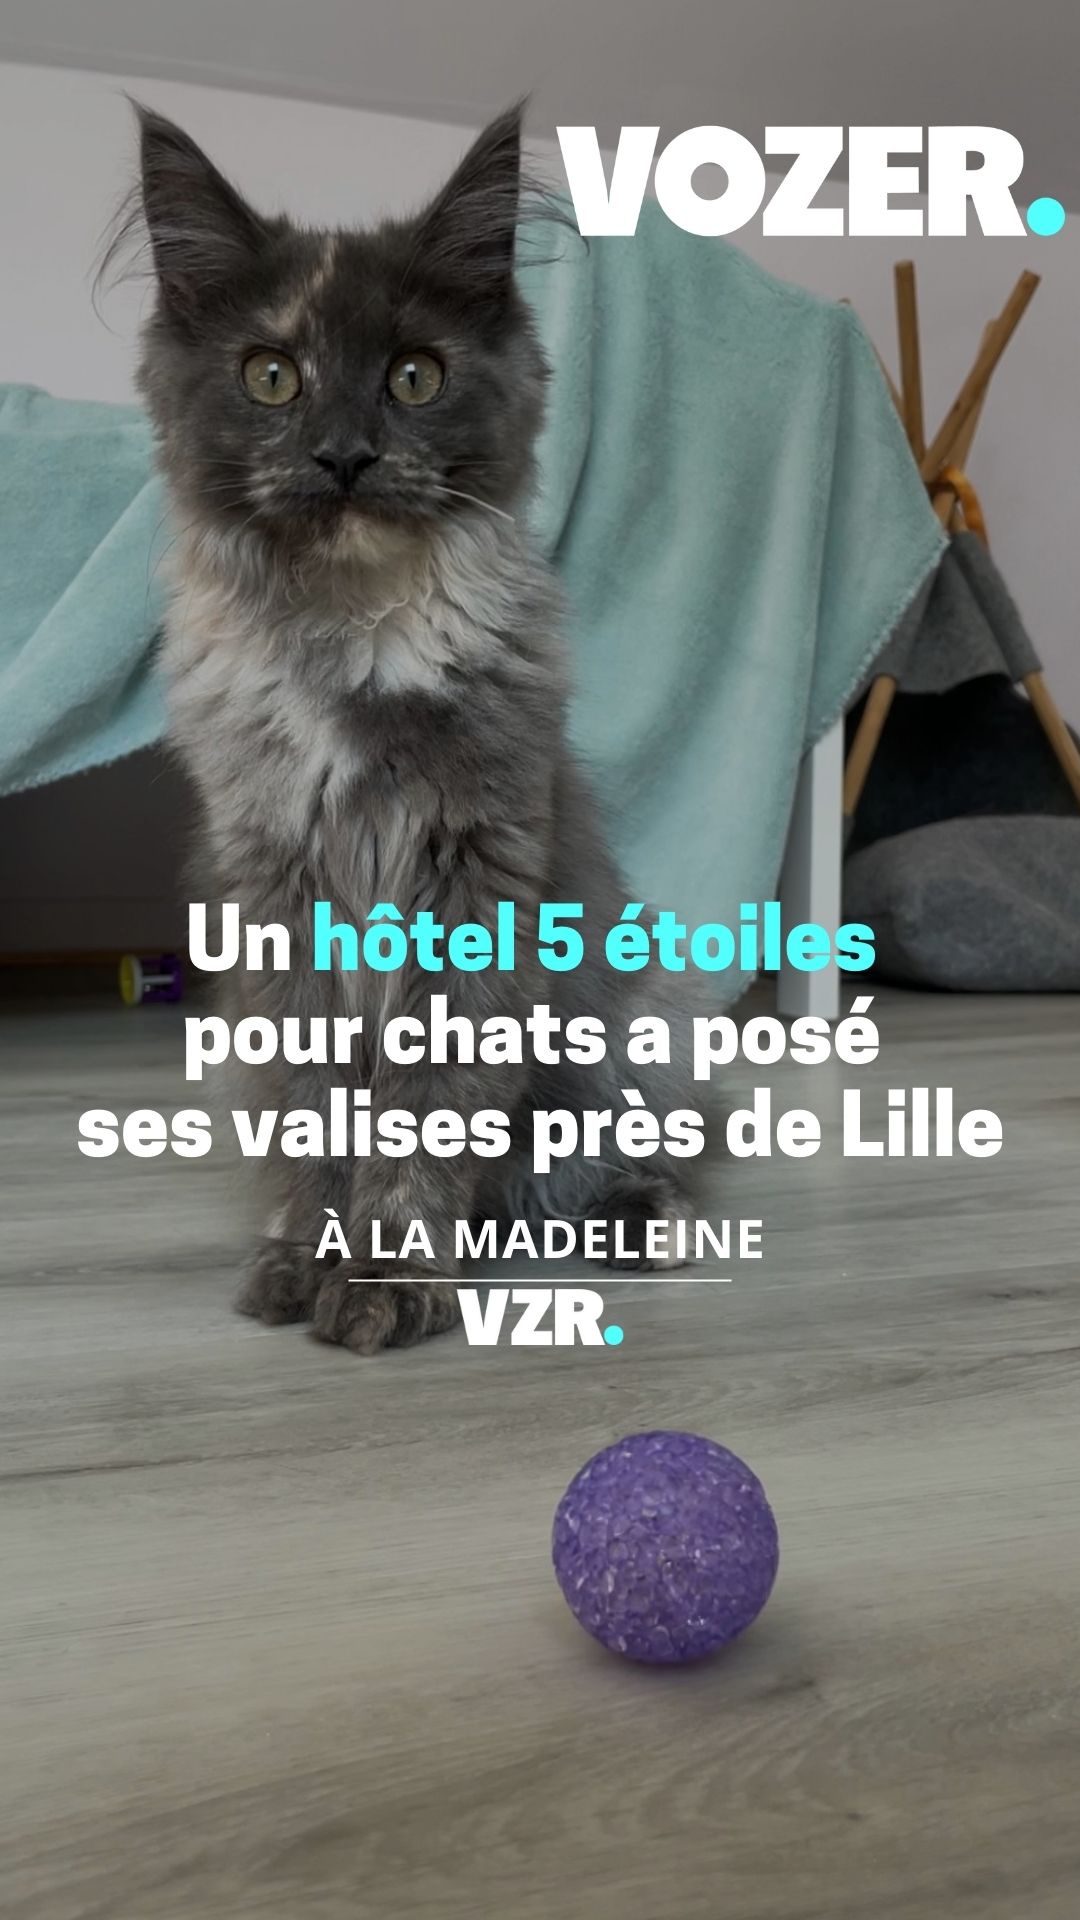 Un hôtel 5 étoiles pour chats a posé ses valises près de Lille